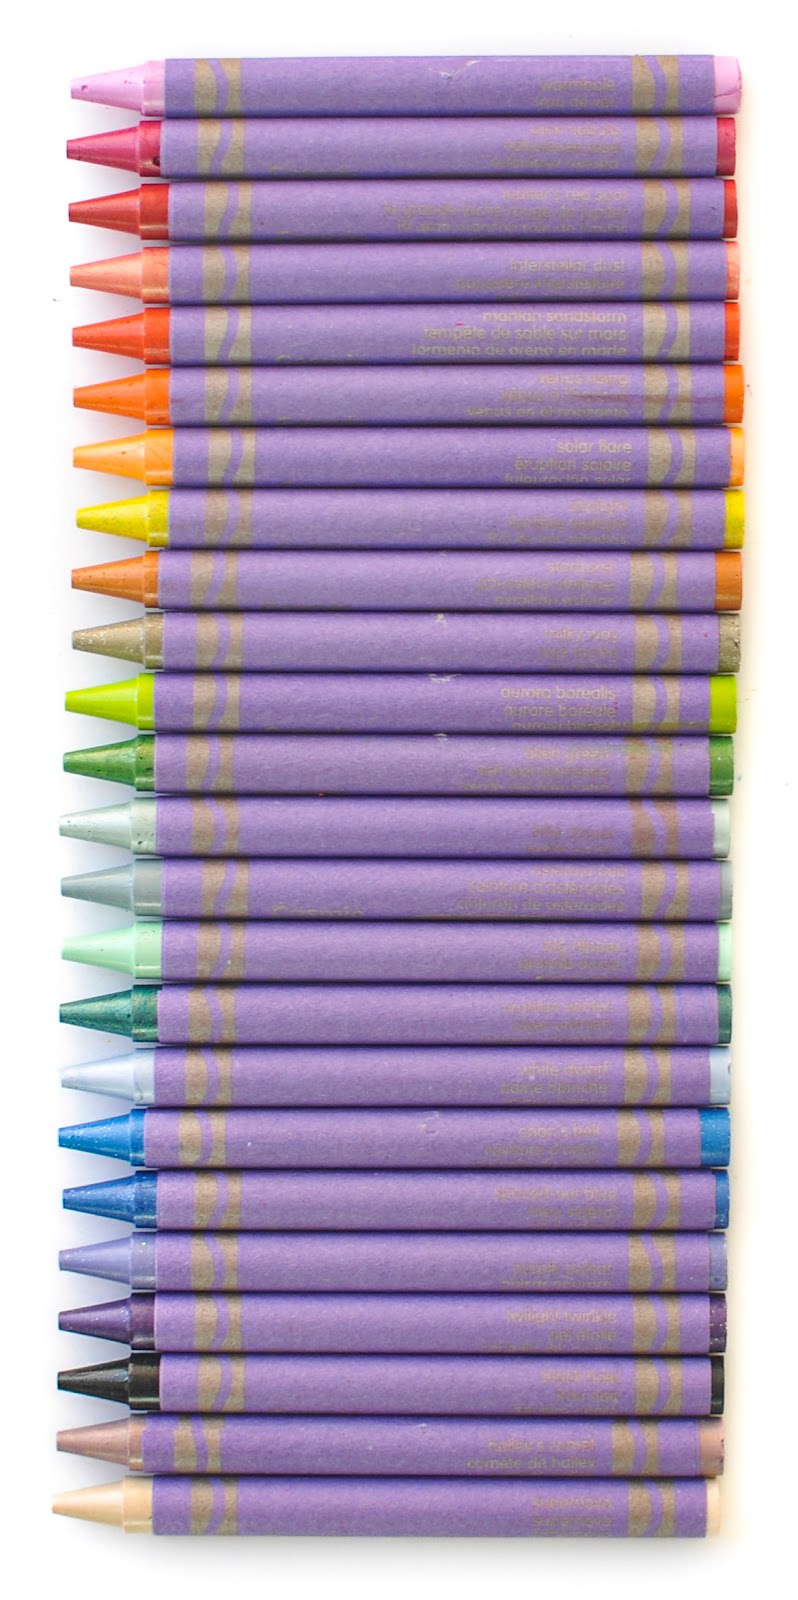 Crayola Crayons, Neon - 24 crayons